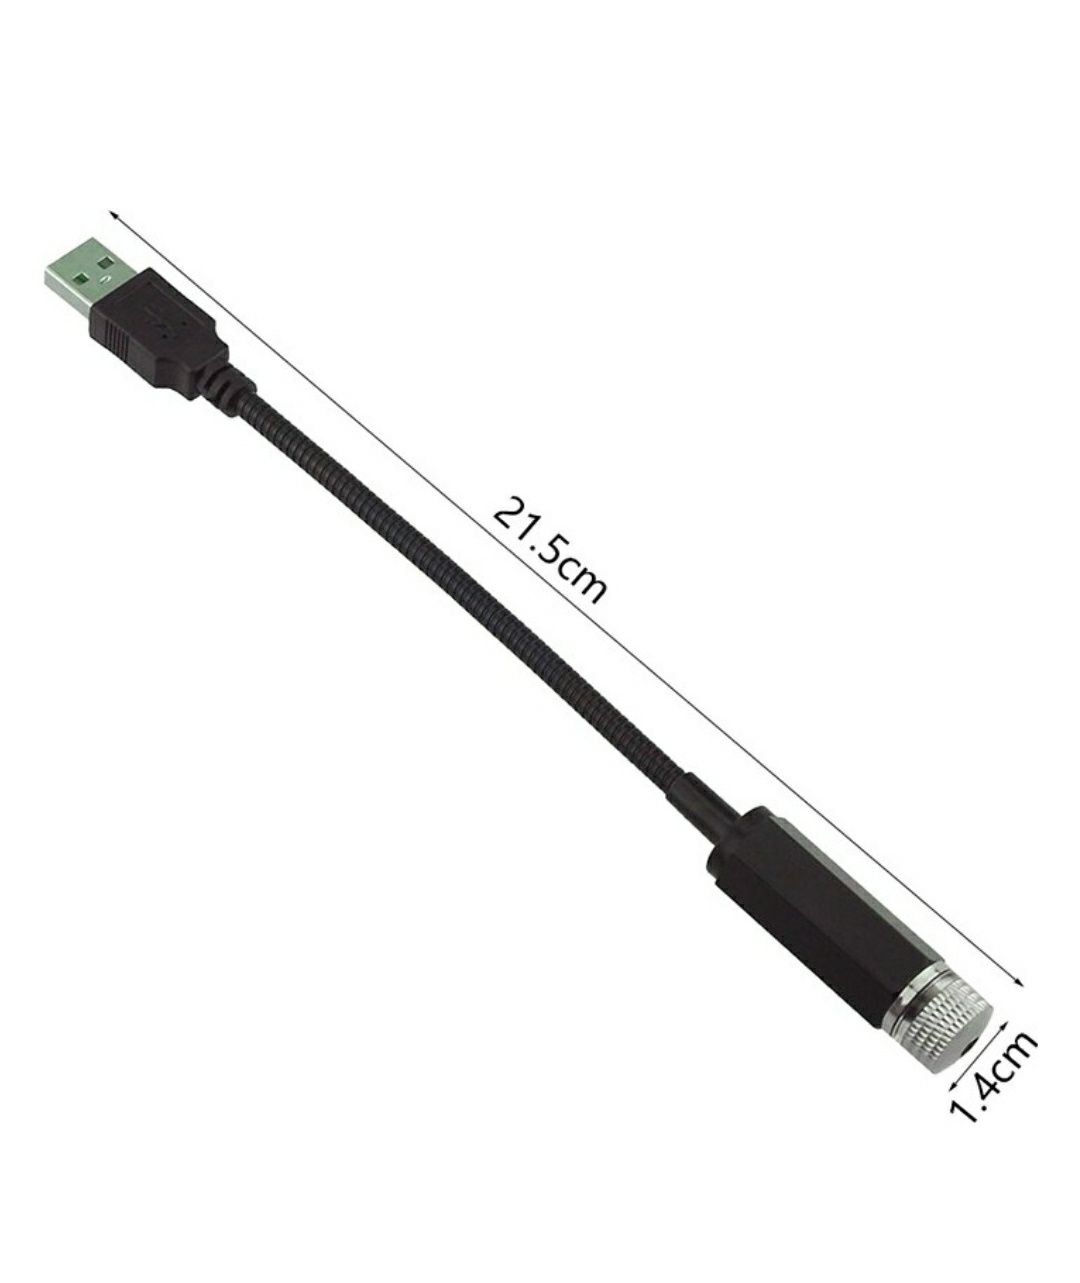 USB проектор ночник светильник